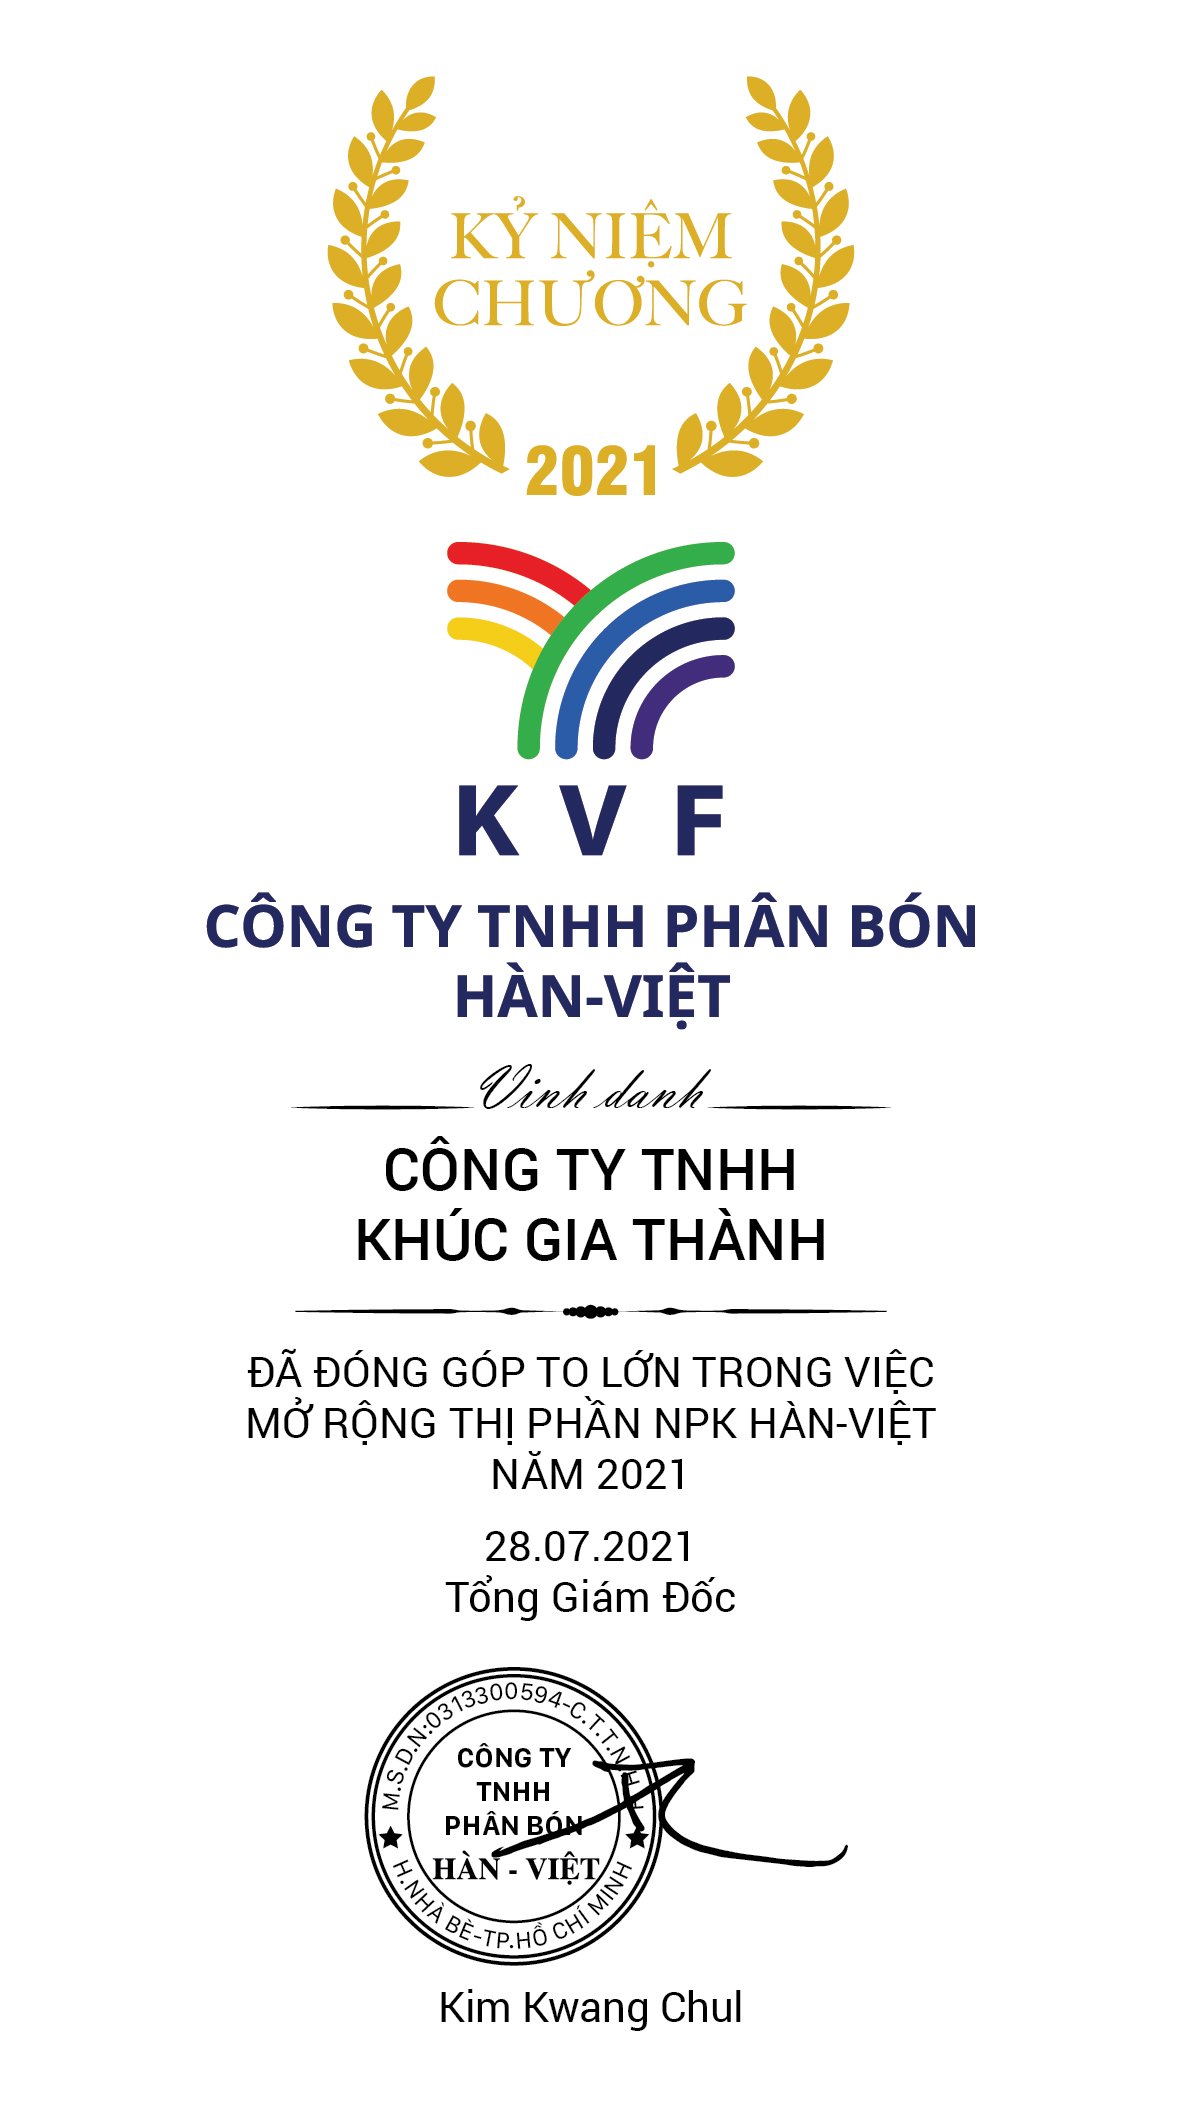 KVF xin gửi lời cảm ơn và chúc mừng NPP Công ty TNHH Khúc Gia Thành (Lâm Đồng) đã vượt mốc doanh số 3.000 tấn NPK Hàn-Việt lũy kế đến 28/07/2021